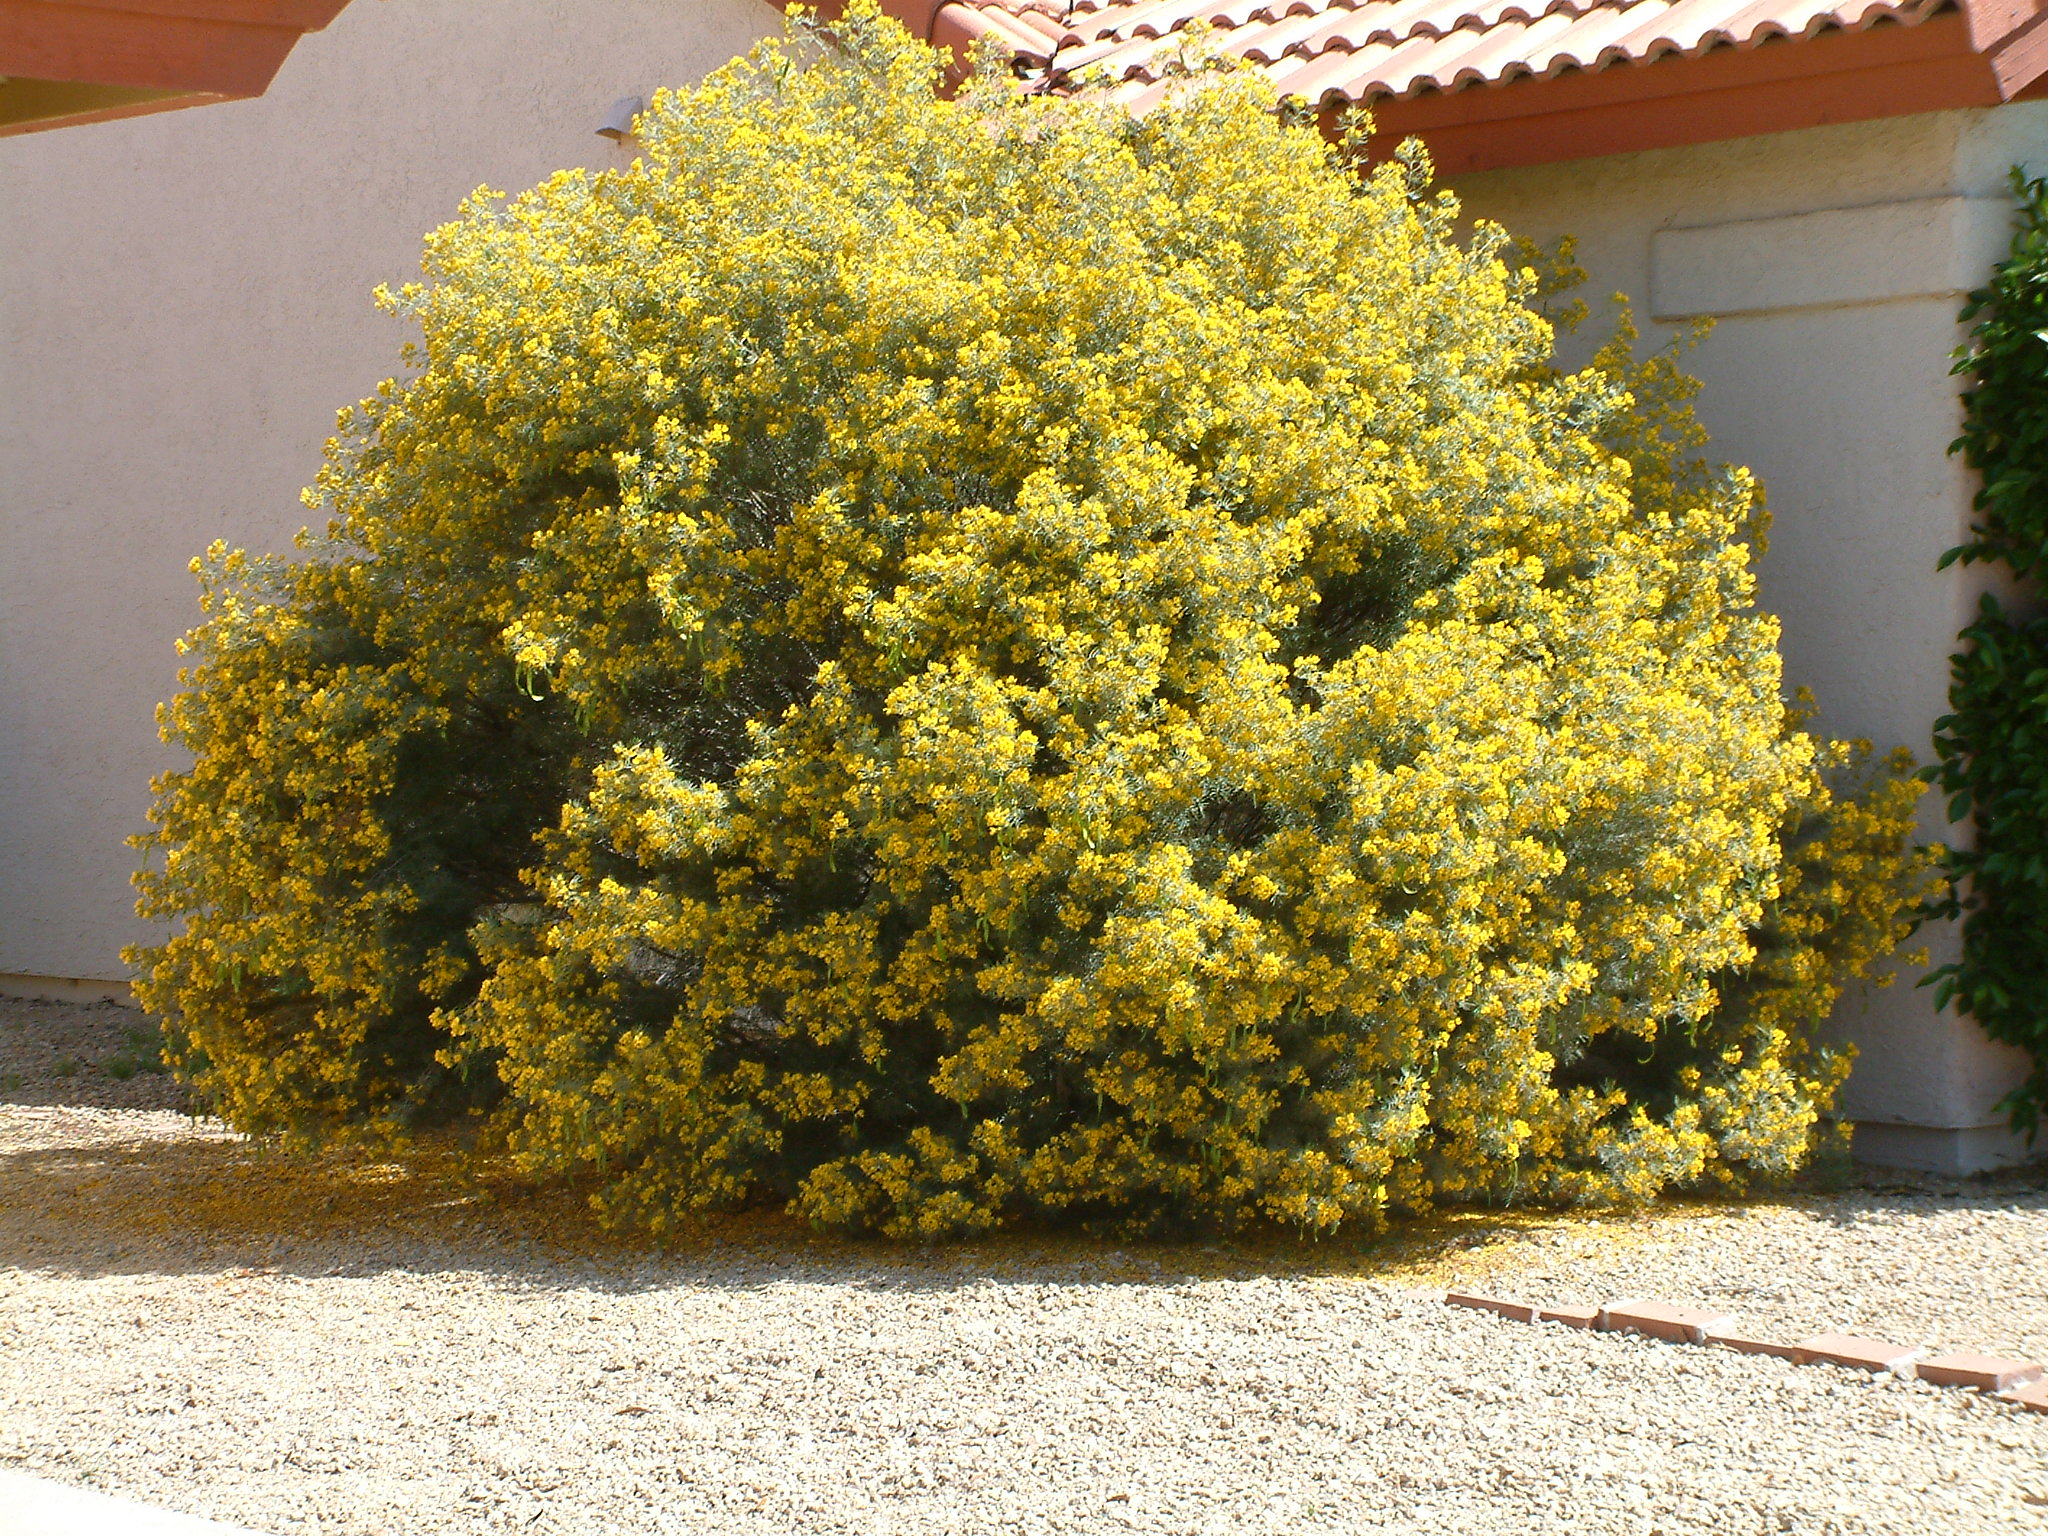 desert cassia shrub